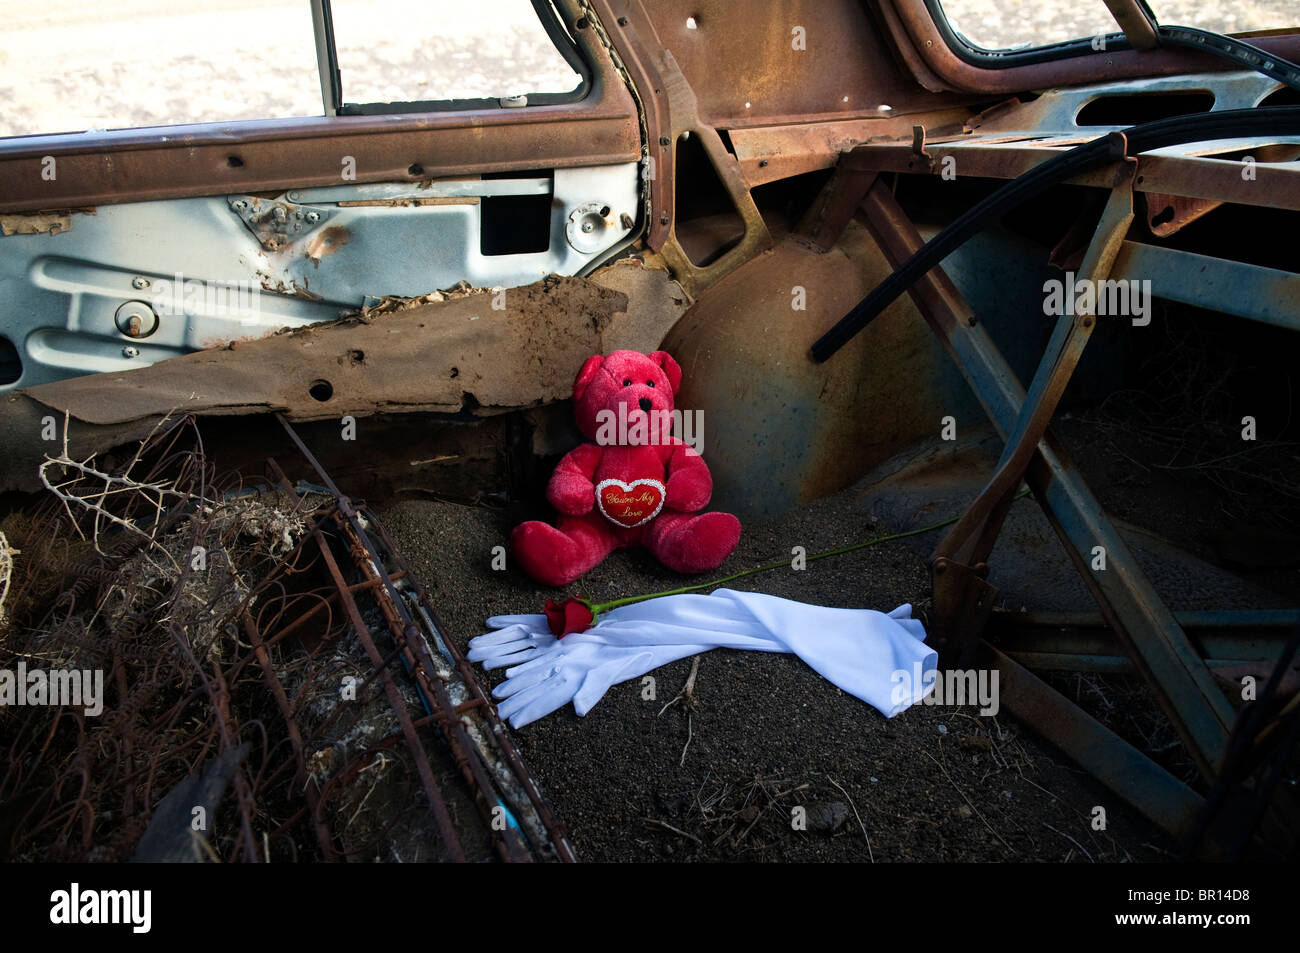 Ours, blanc, rose rouge gants officiels en voiture abandonnée. Banque D'Images